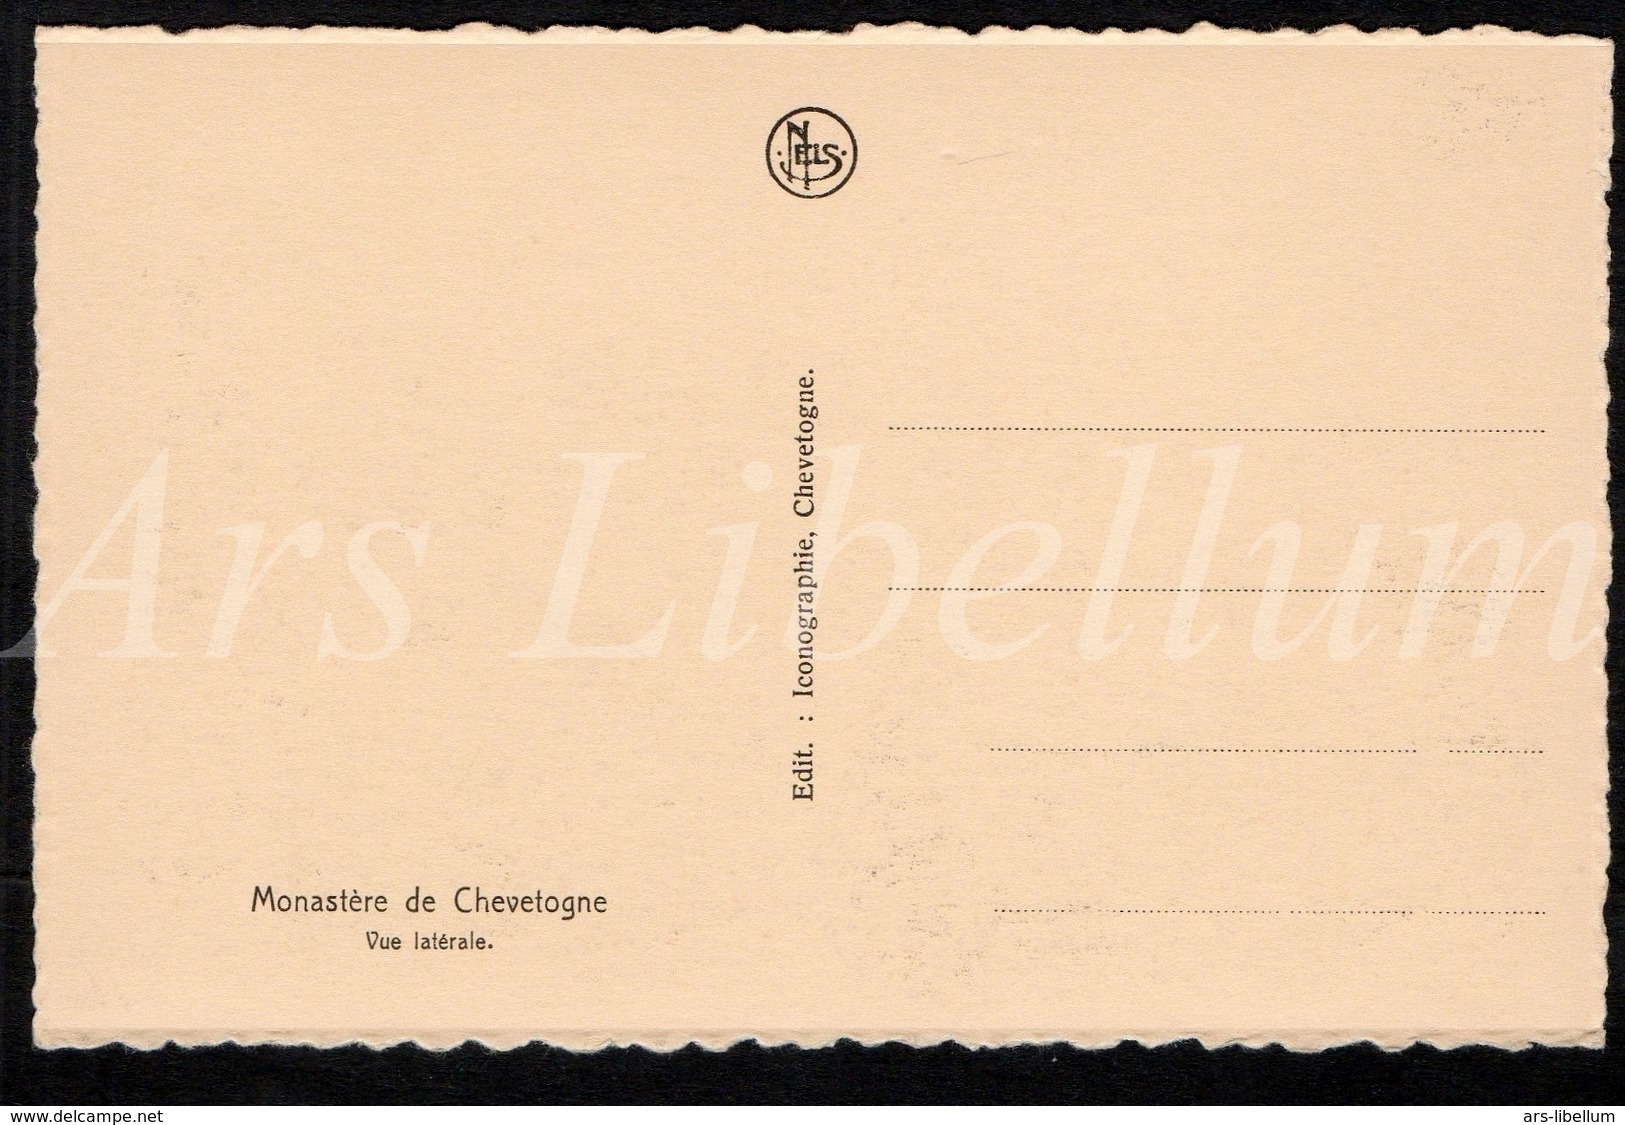 Postcard / CPA / Abbaye De Chevetogne / Monastère De Chevetogne / Vue Latérale / Nels / Edit. Iconographie / Unused - Ciney